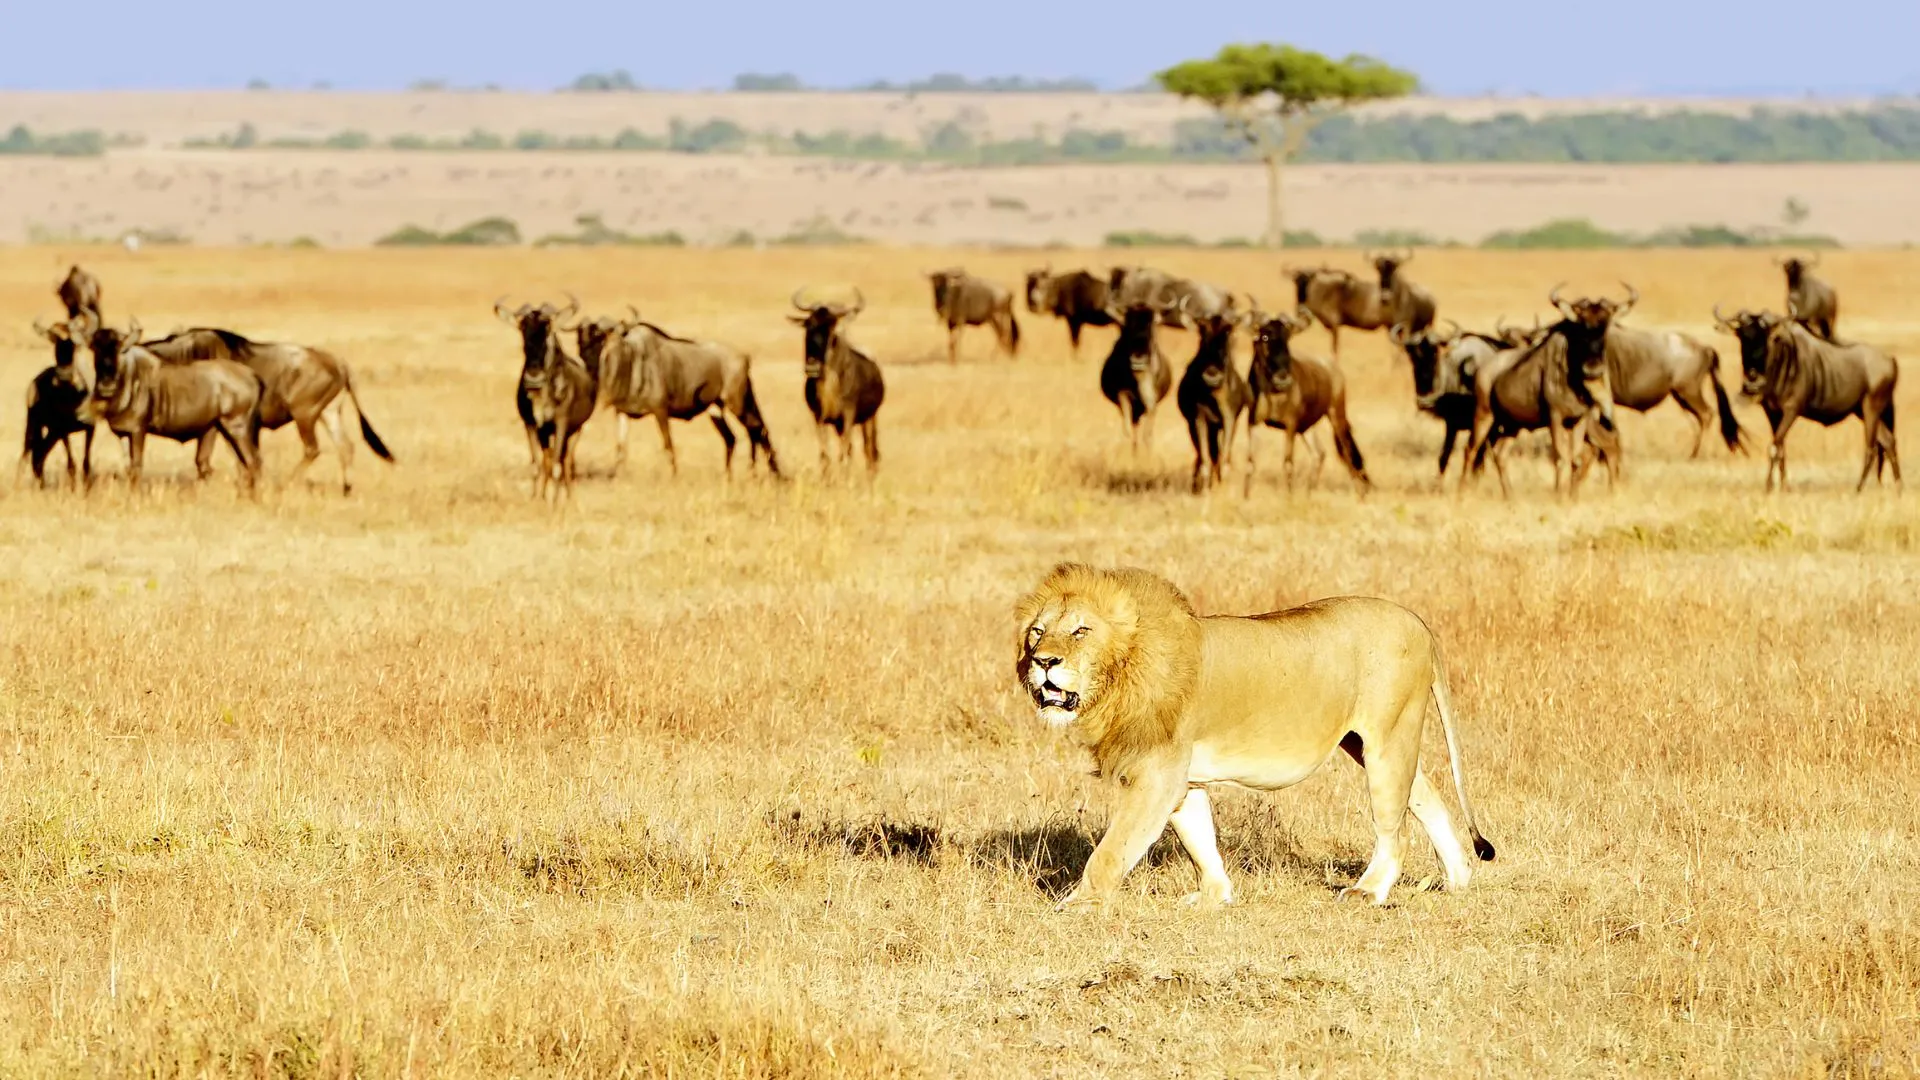 Tips for Kenya Safari